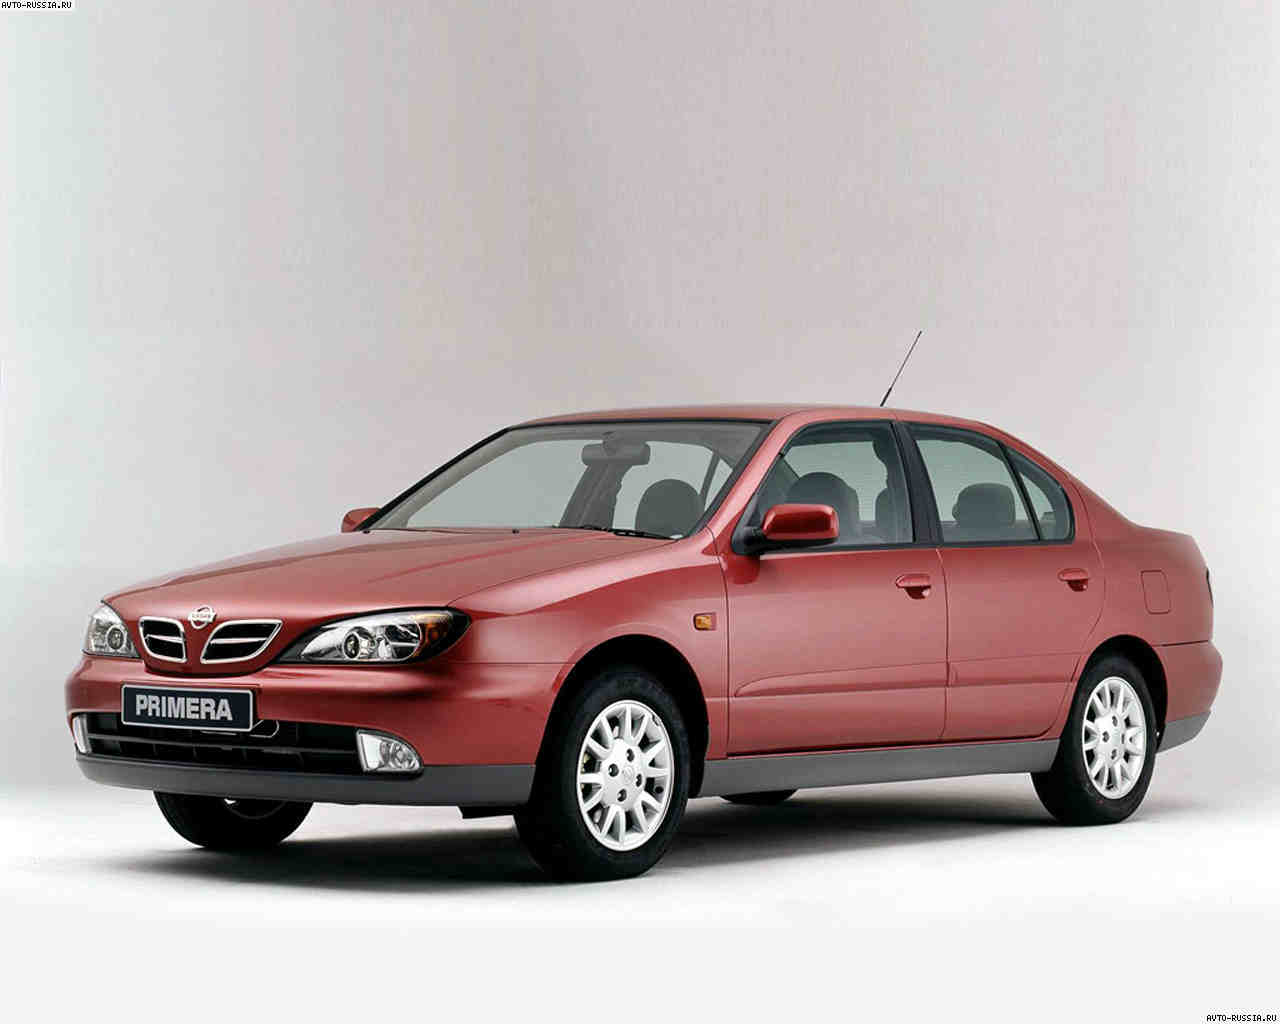  1999.-2002. Primera P 11